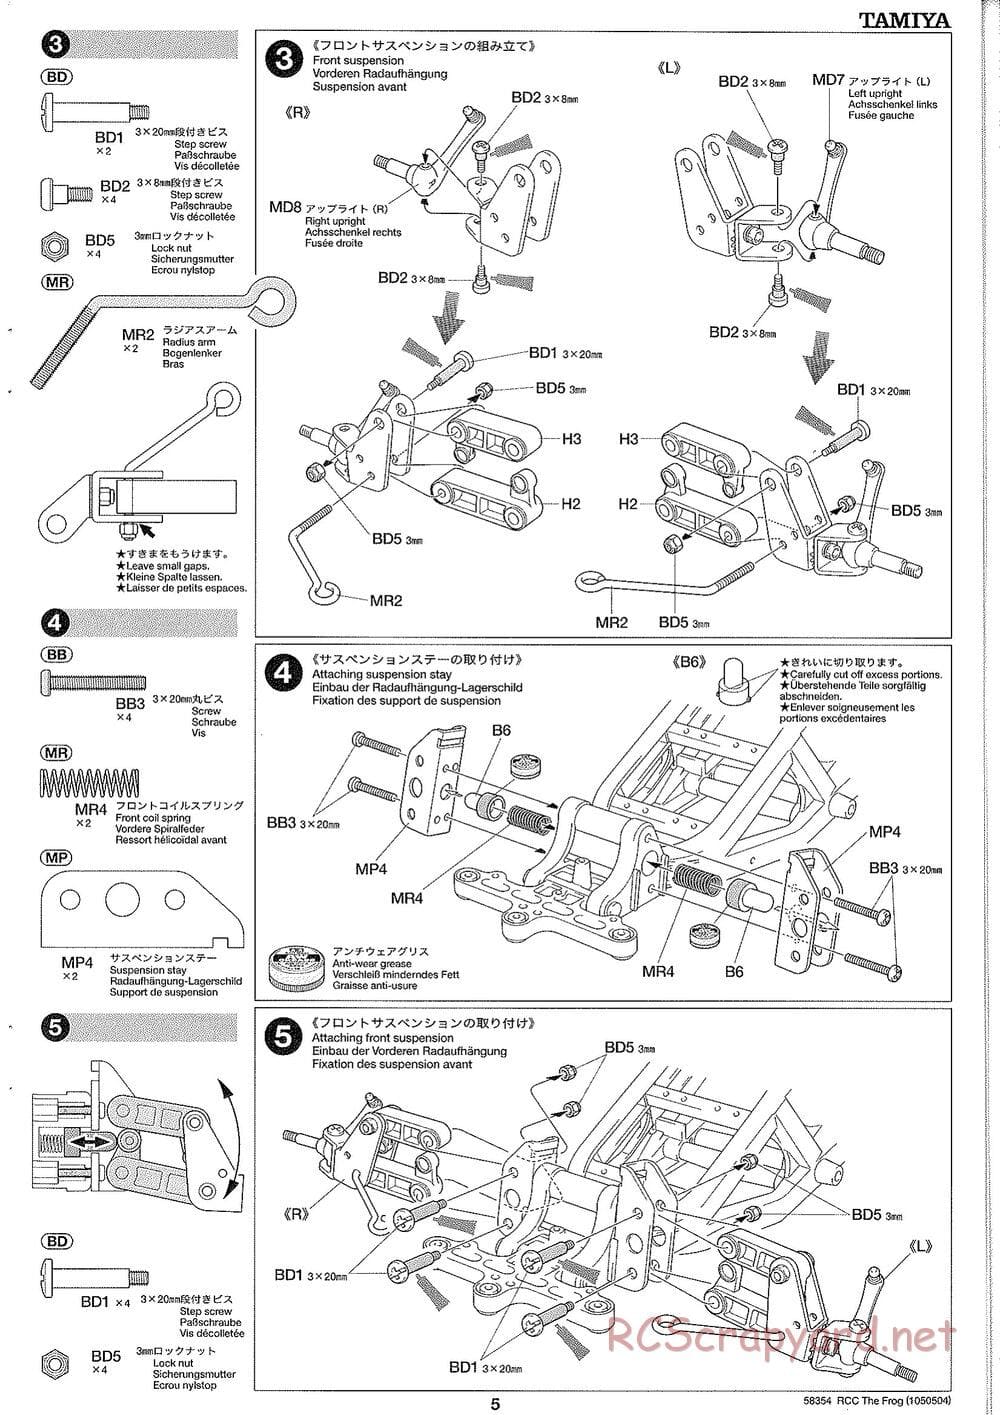 Tamiya - The Frog - 2005 - ORV Chassis - Manual - Page 5